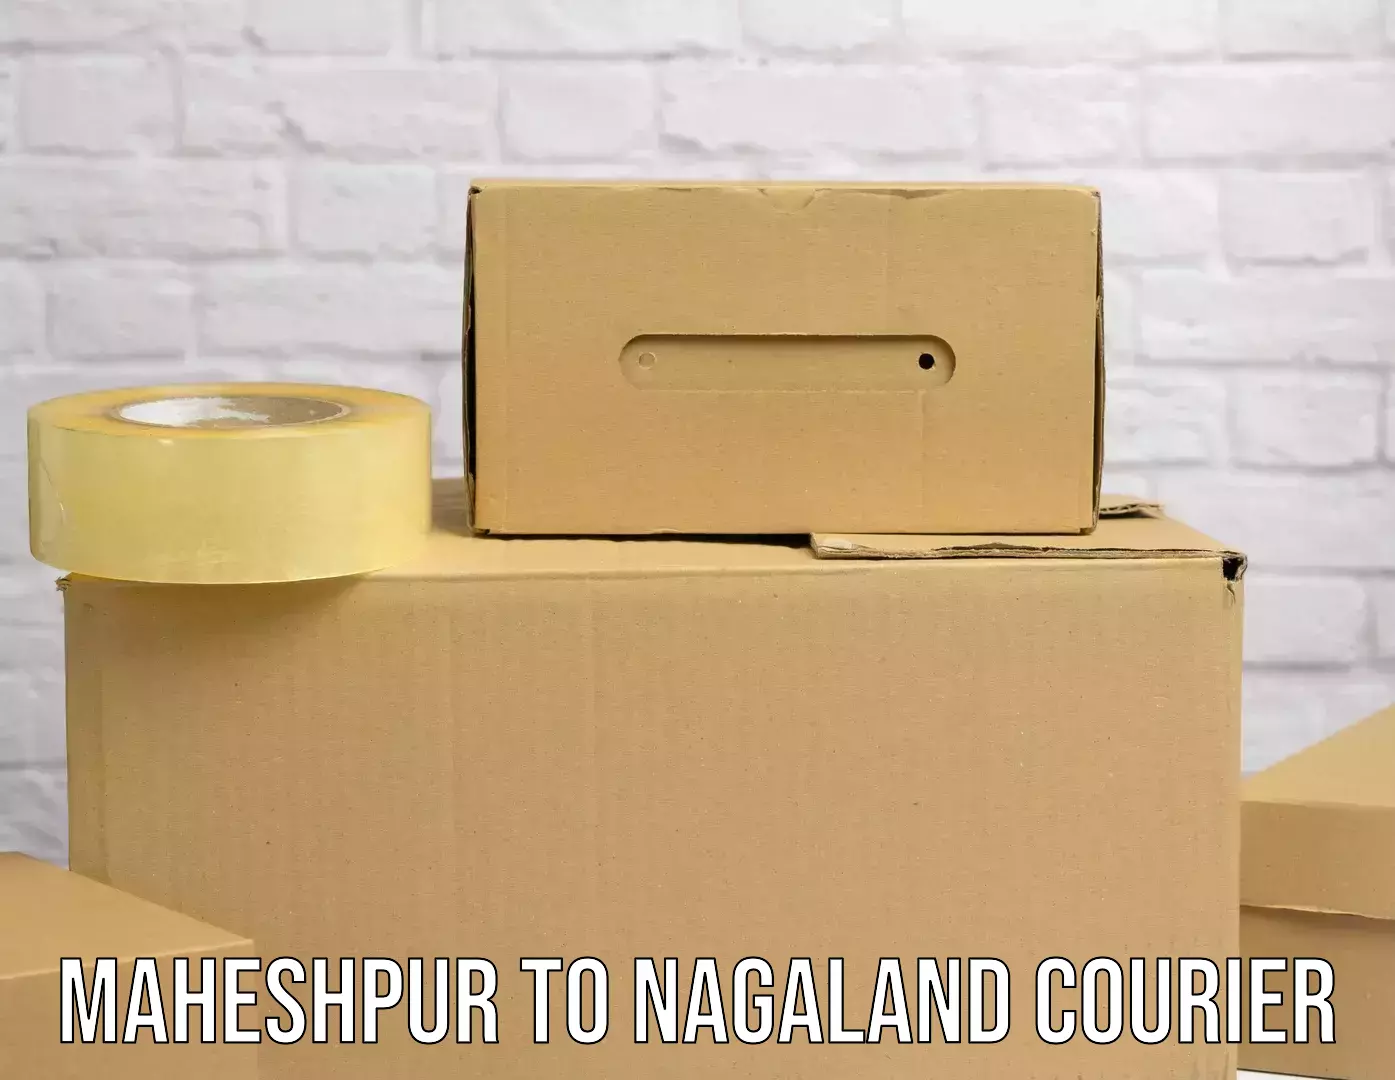 Express mail solutions Maheshpur to Nagaland